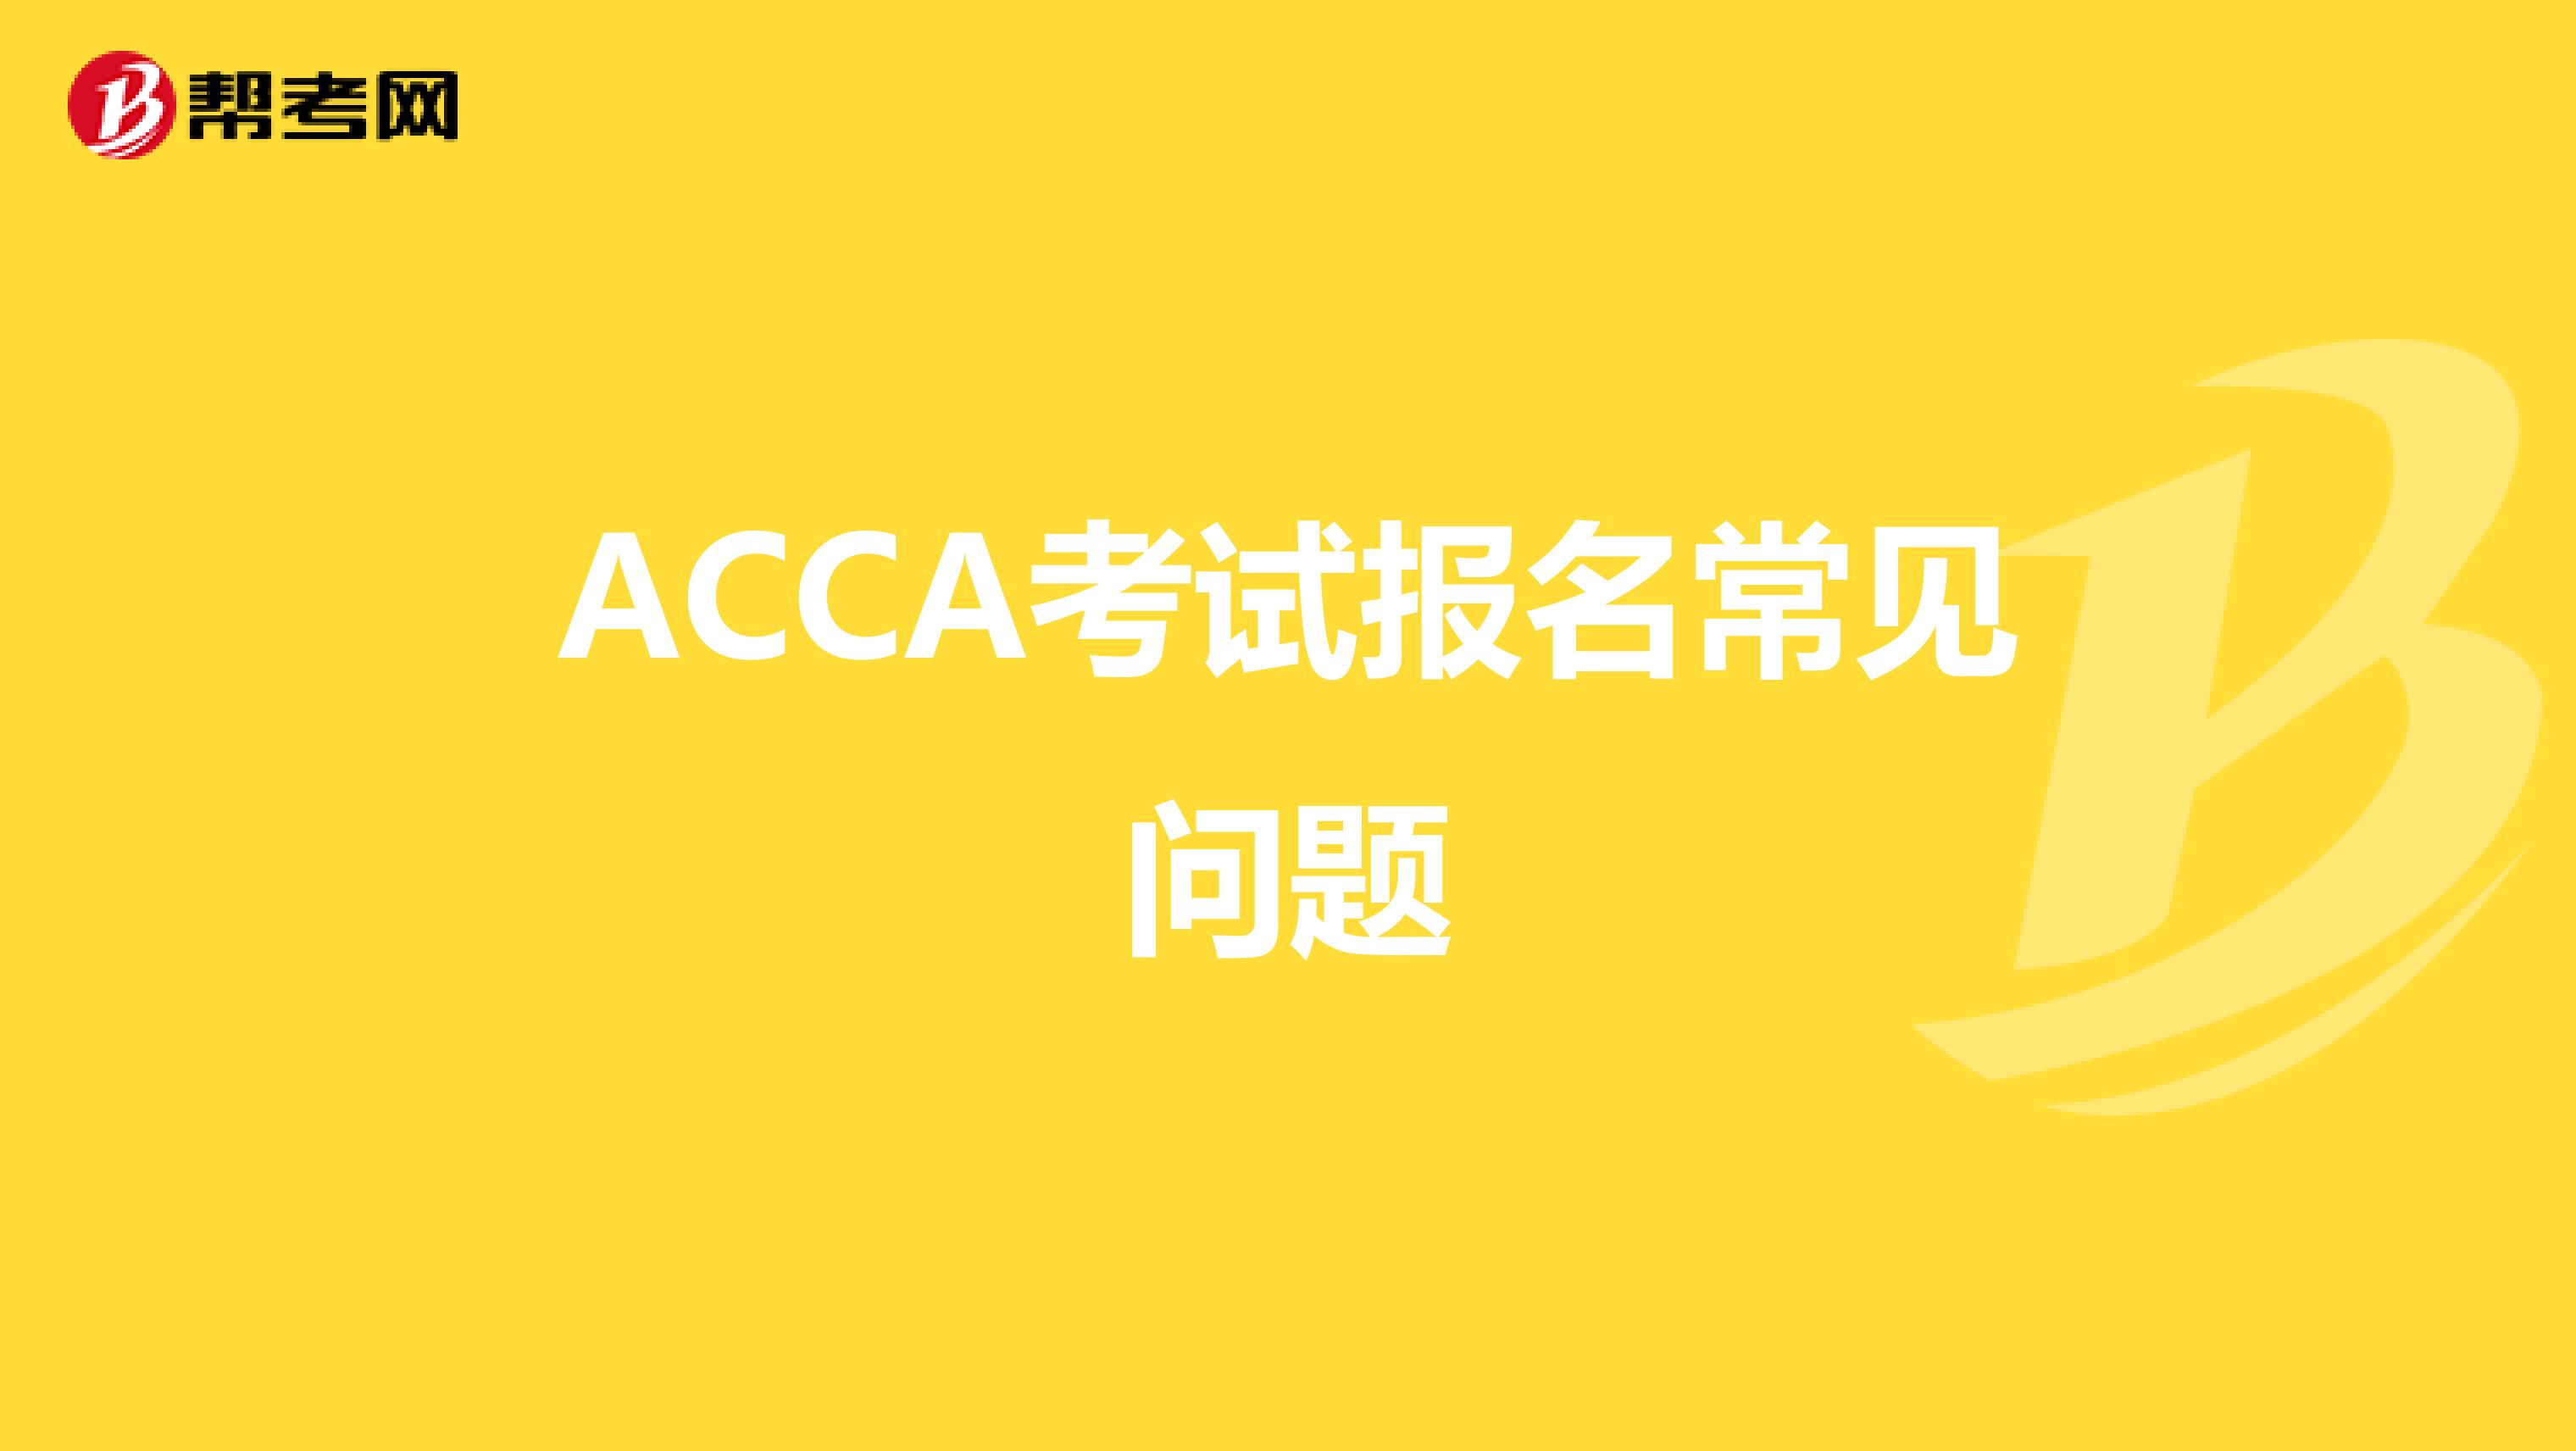 ACCA考试报名常见问题